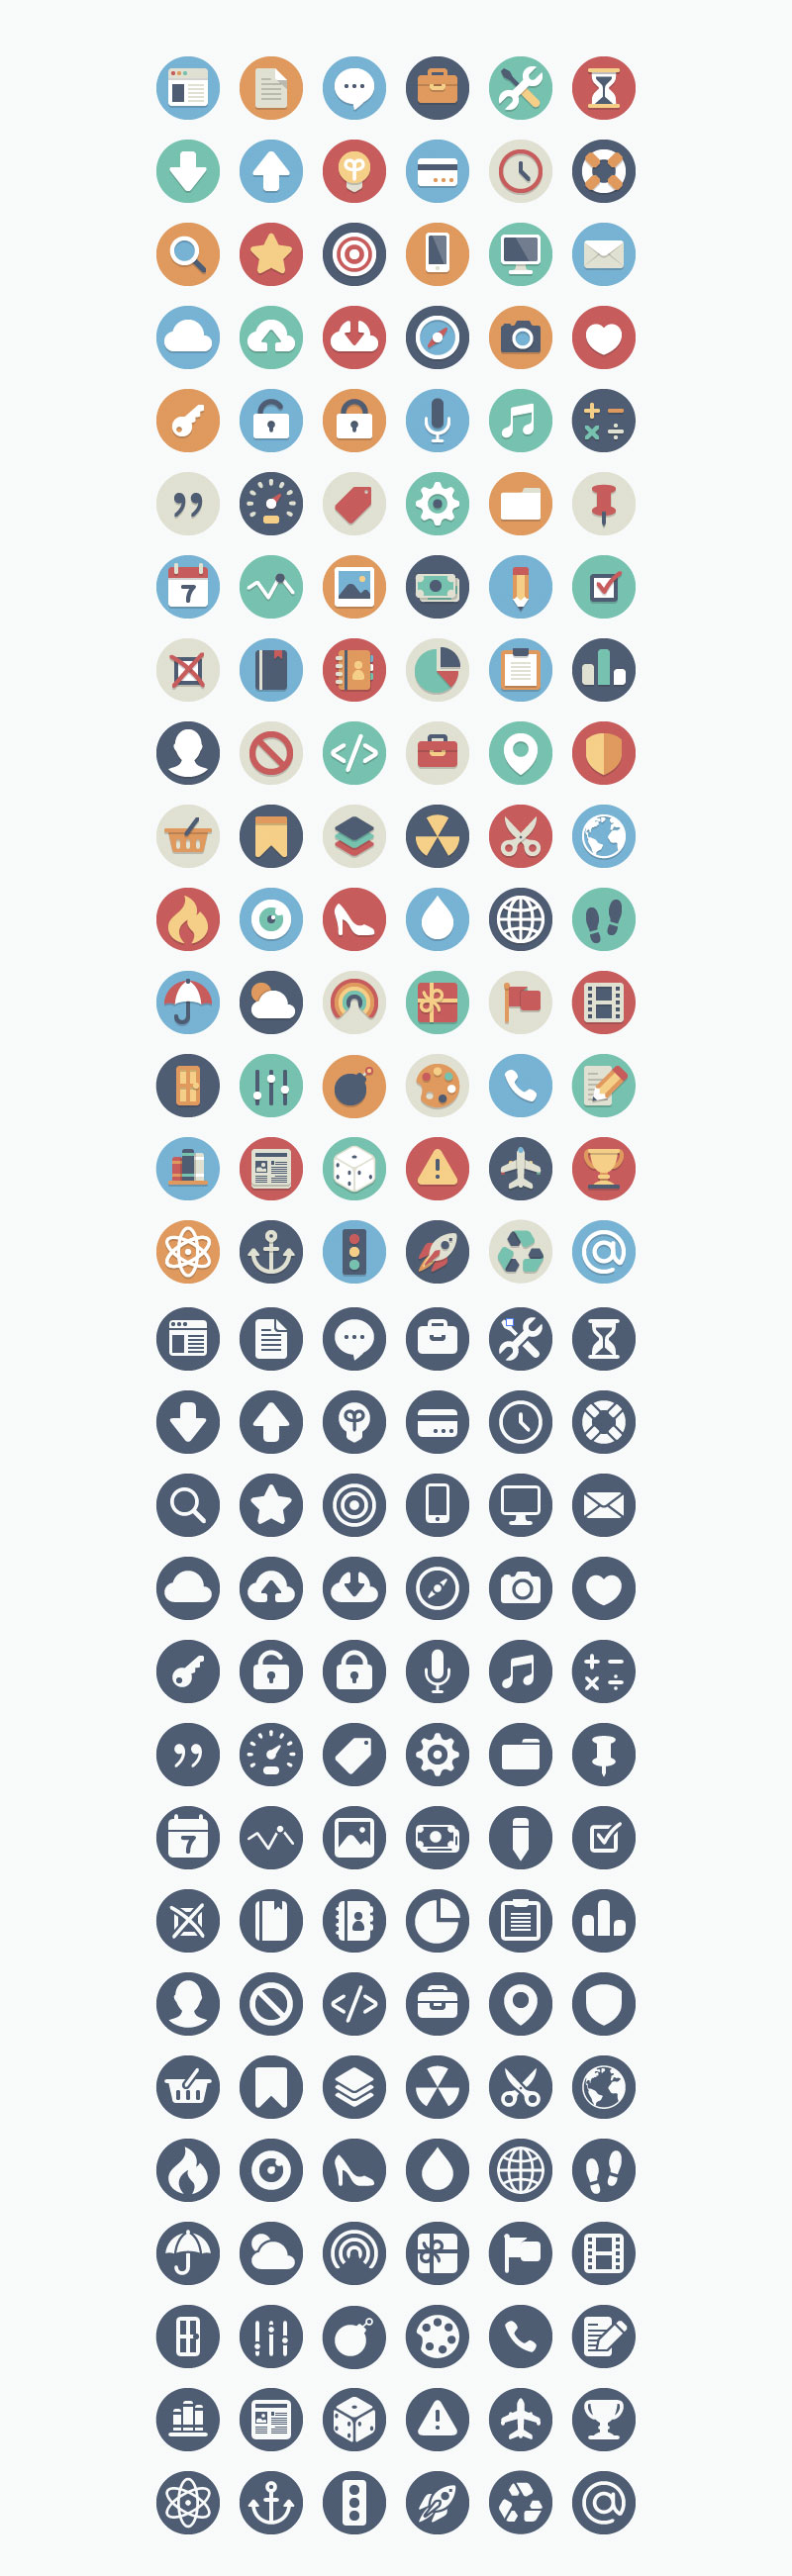 180-Free-Beautiful-Flat-Icons